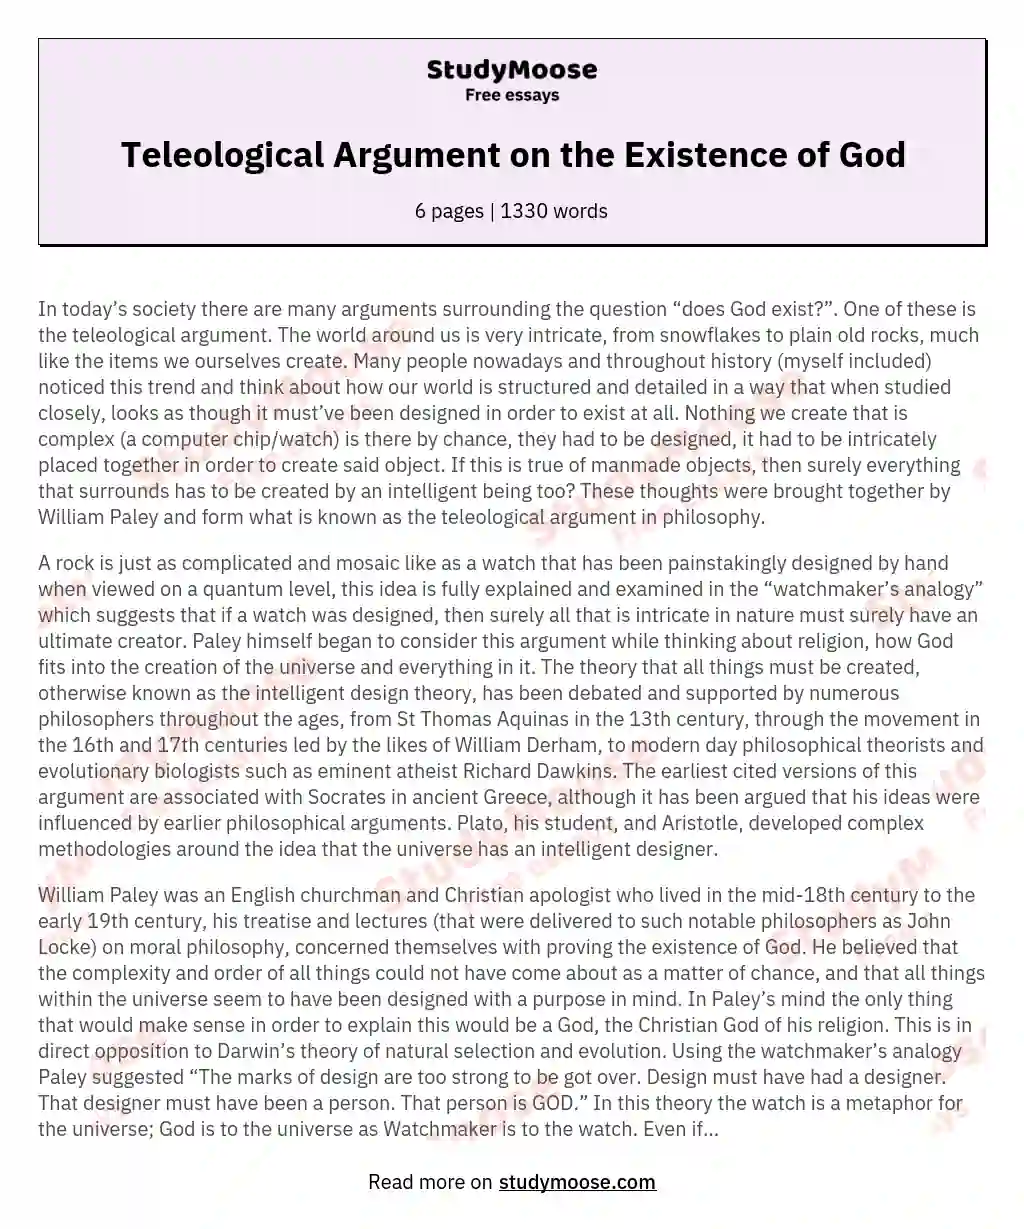 Teleological Argument on the Existence of God essay